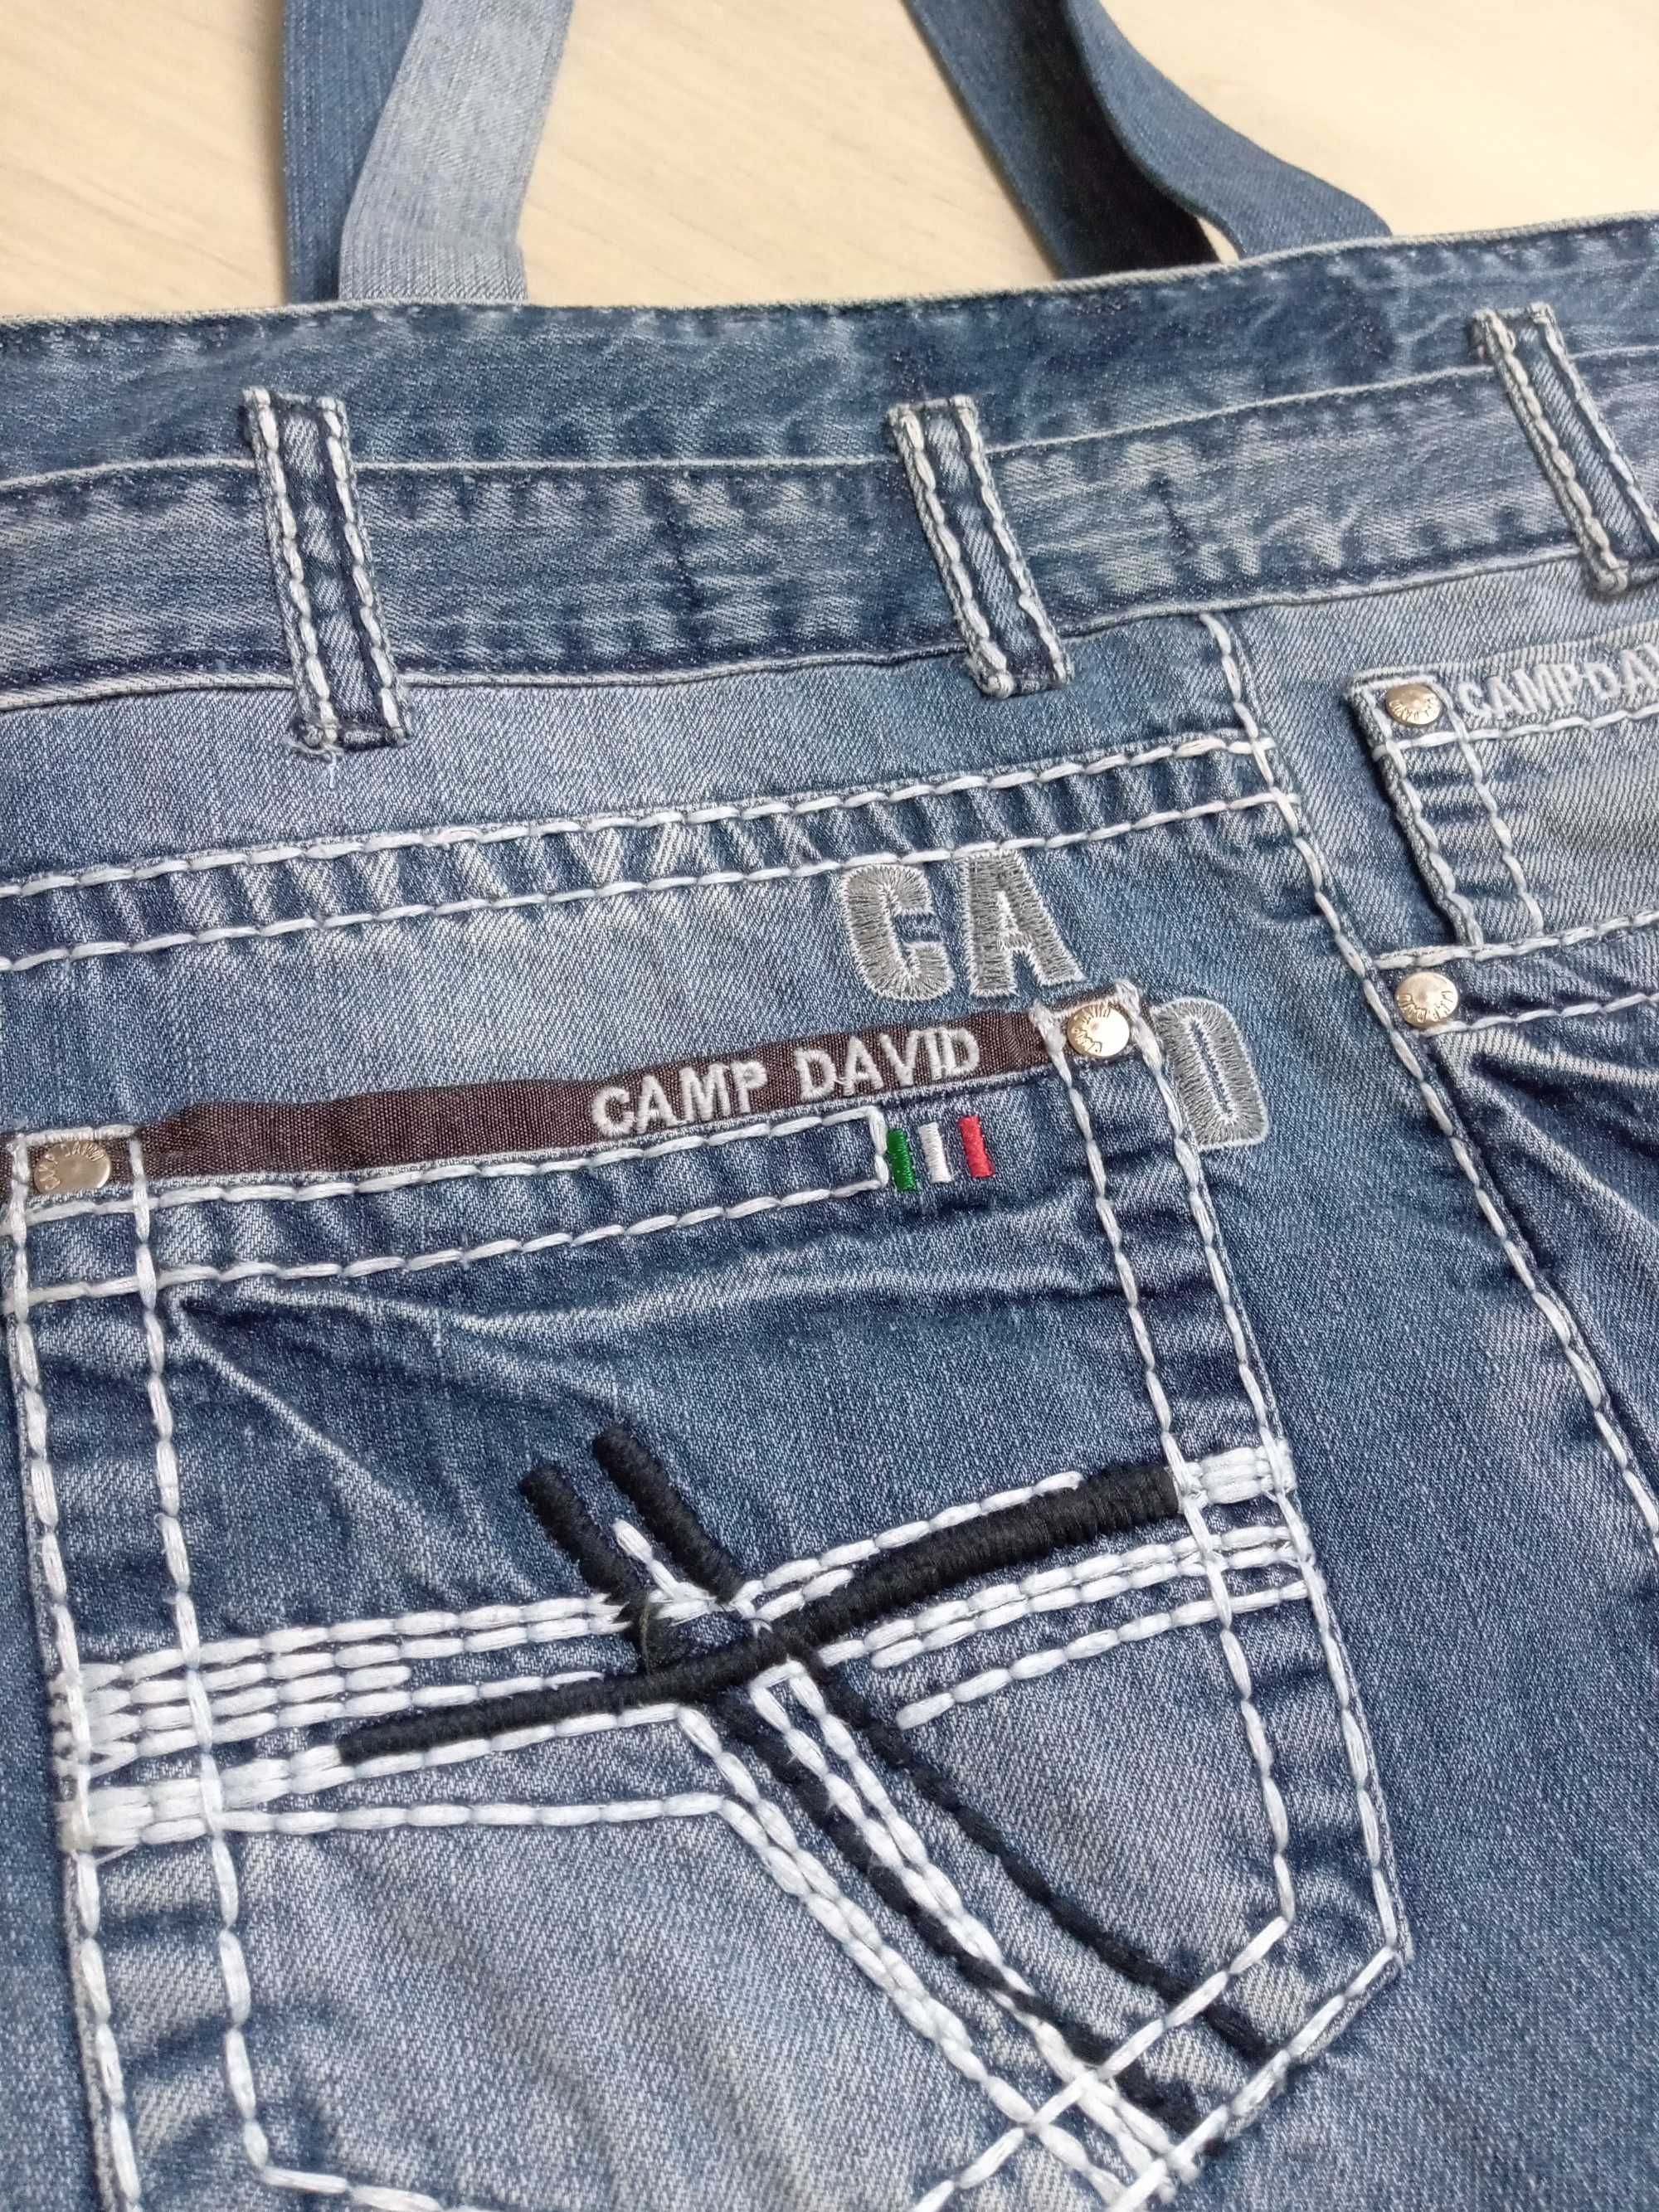 PROMOCJA Torebka torba jeansowa  rękodzieło cena z wysyłką prezent